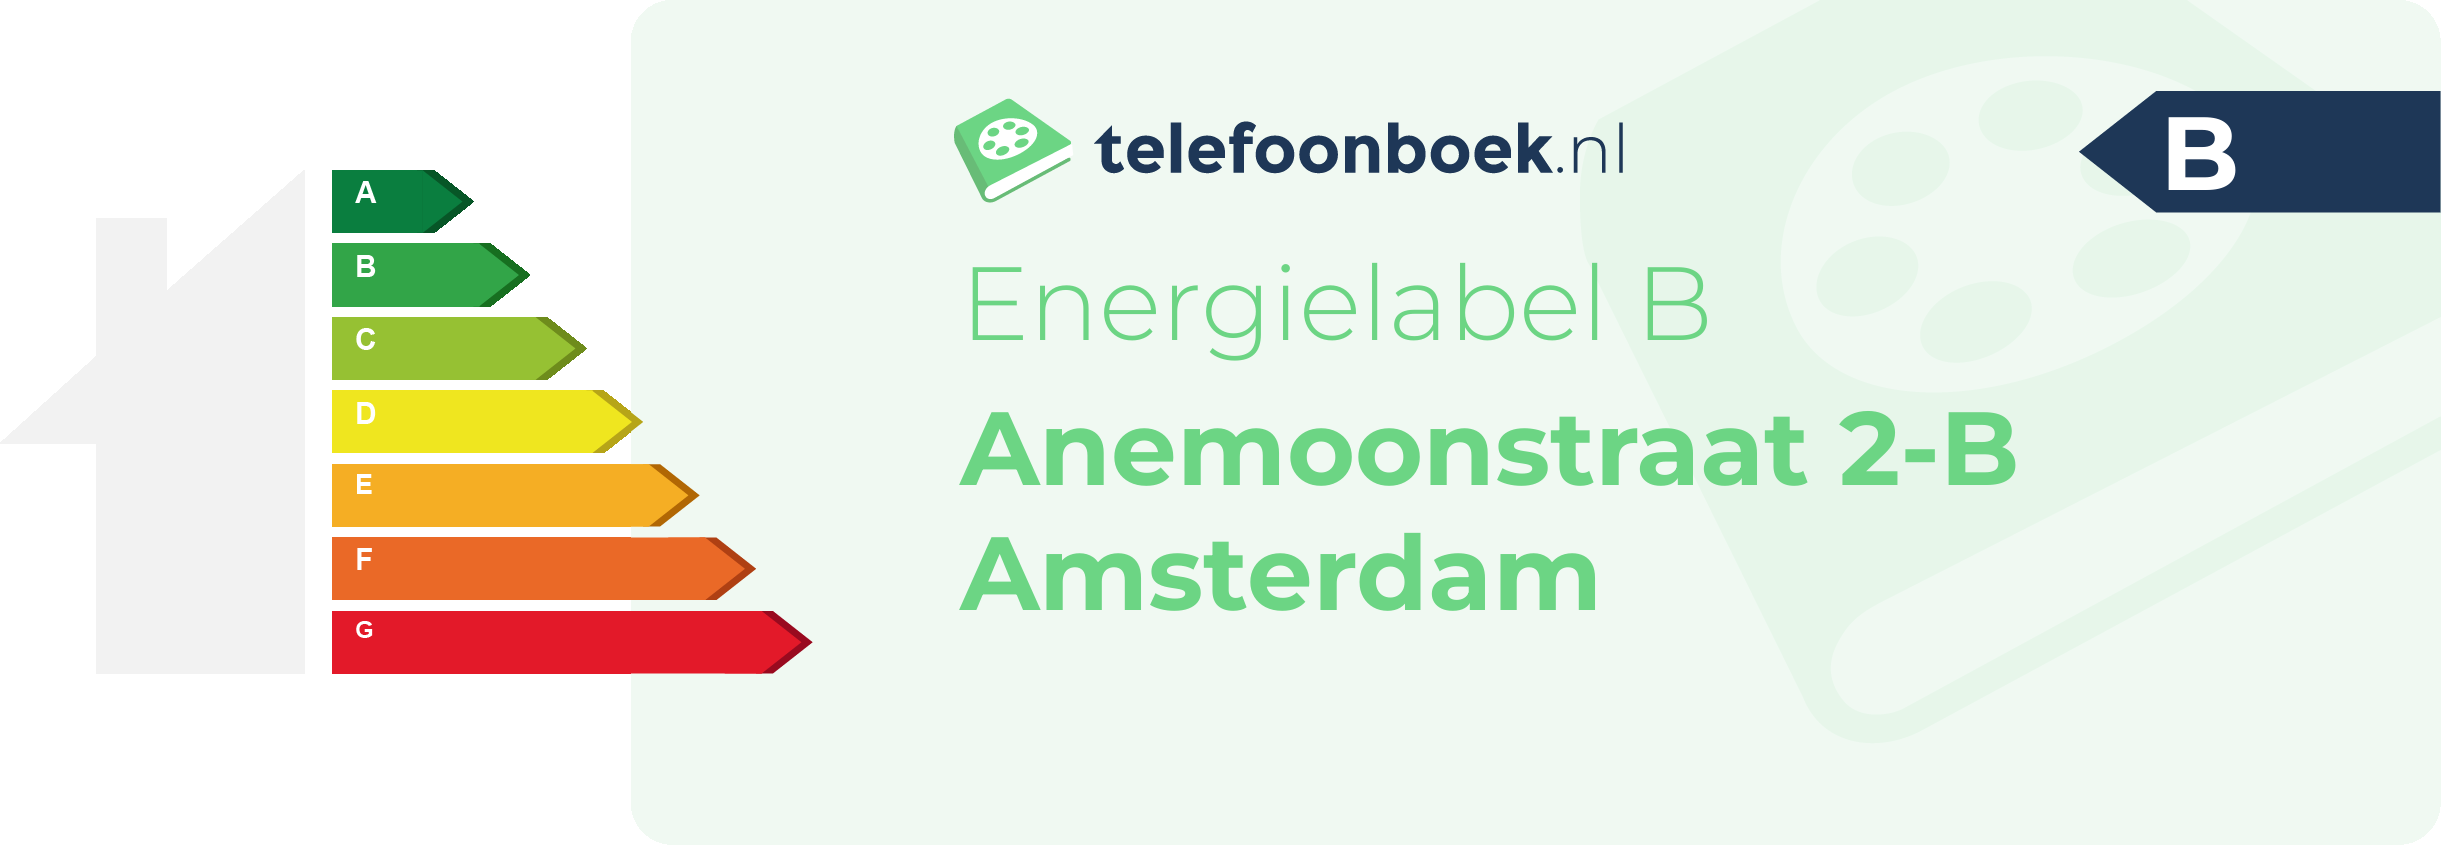 Energielabel Anemoonstraat 2-B Amsterdam